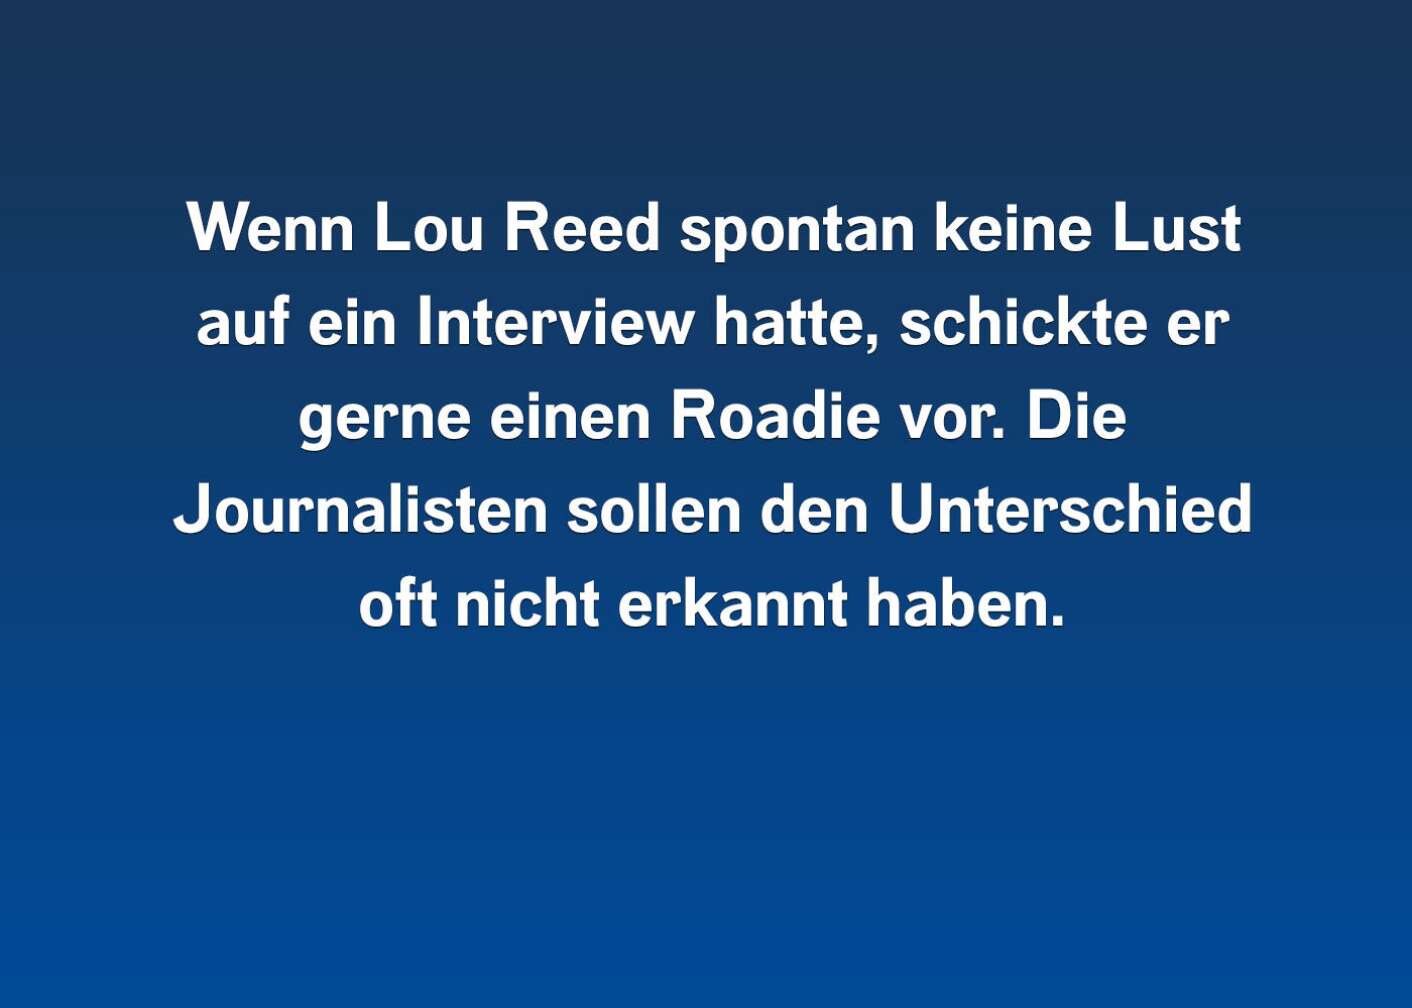 7 Fakten über Lou Reed